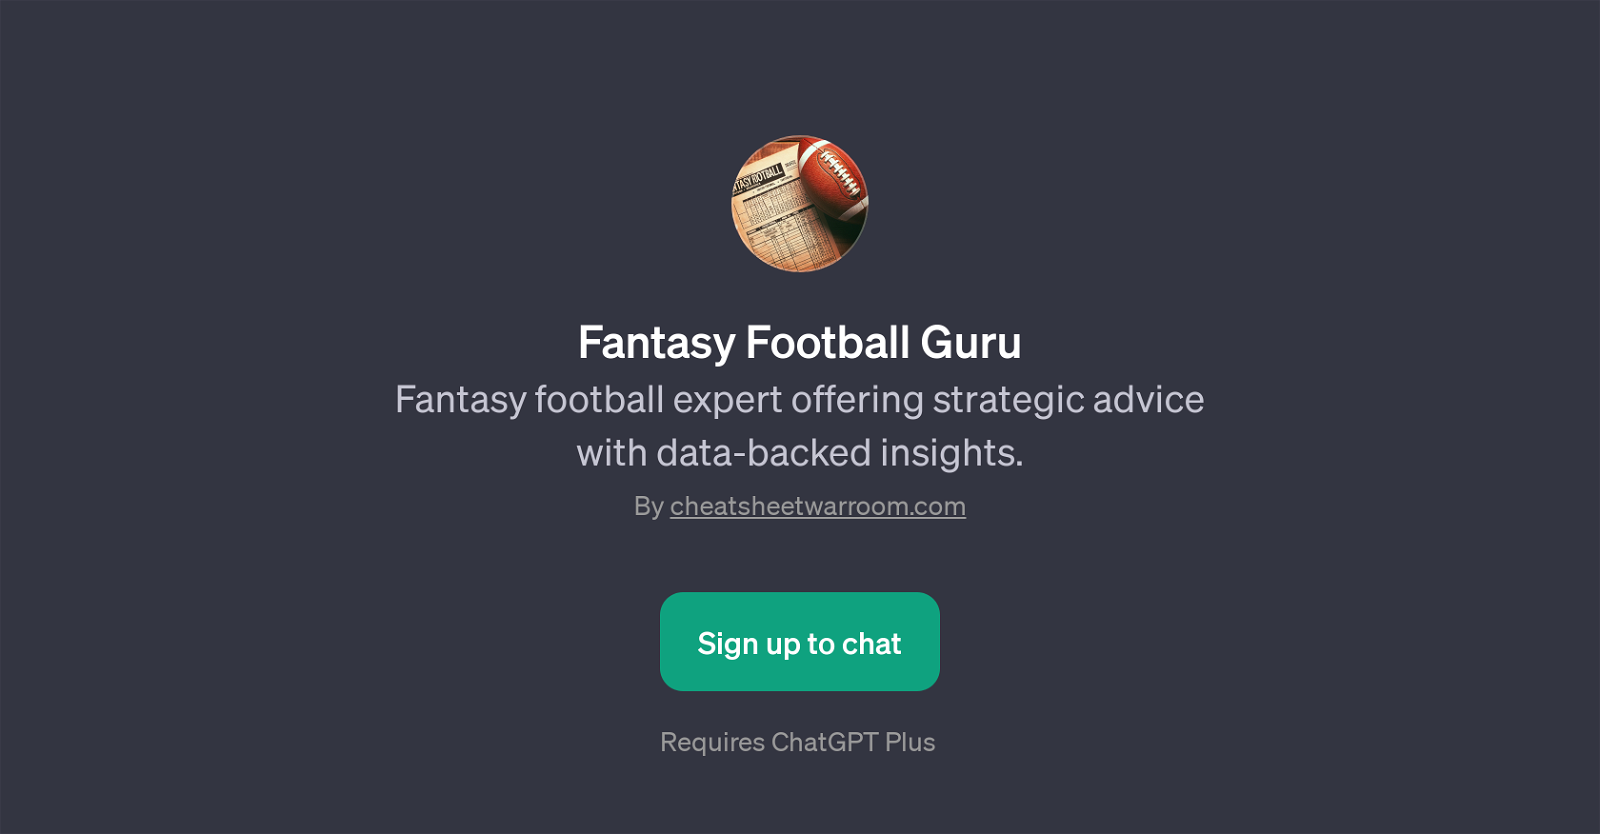 Fantasy Football Guru website